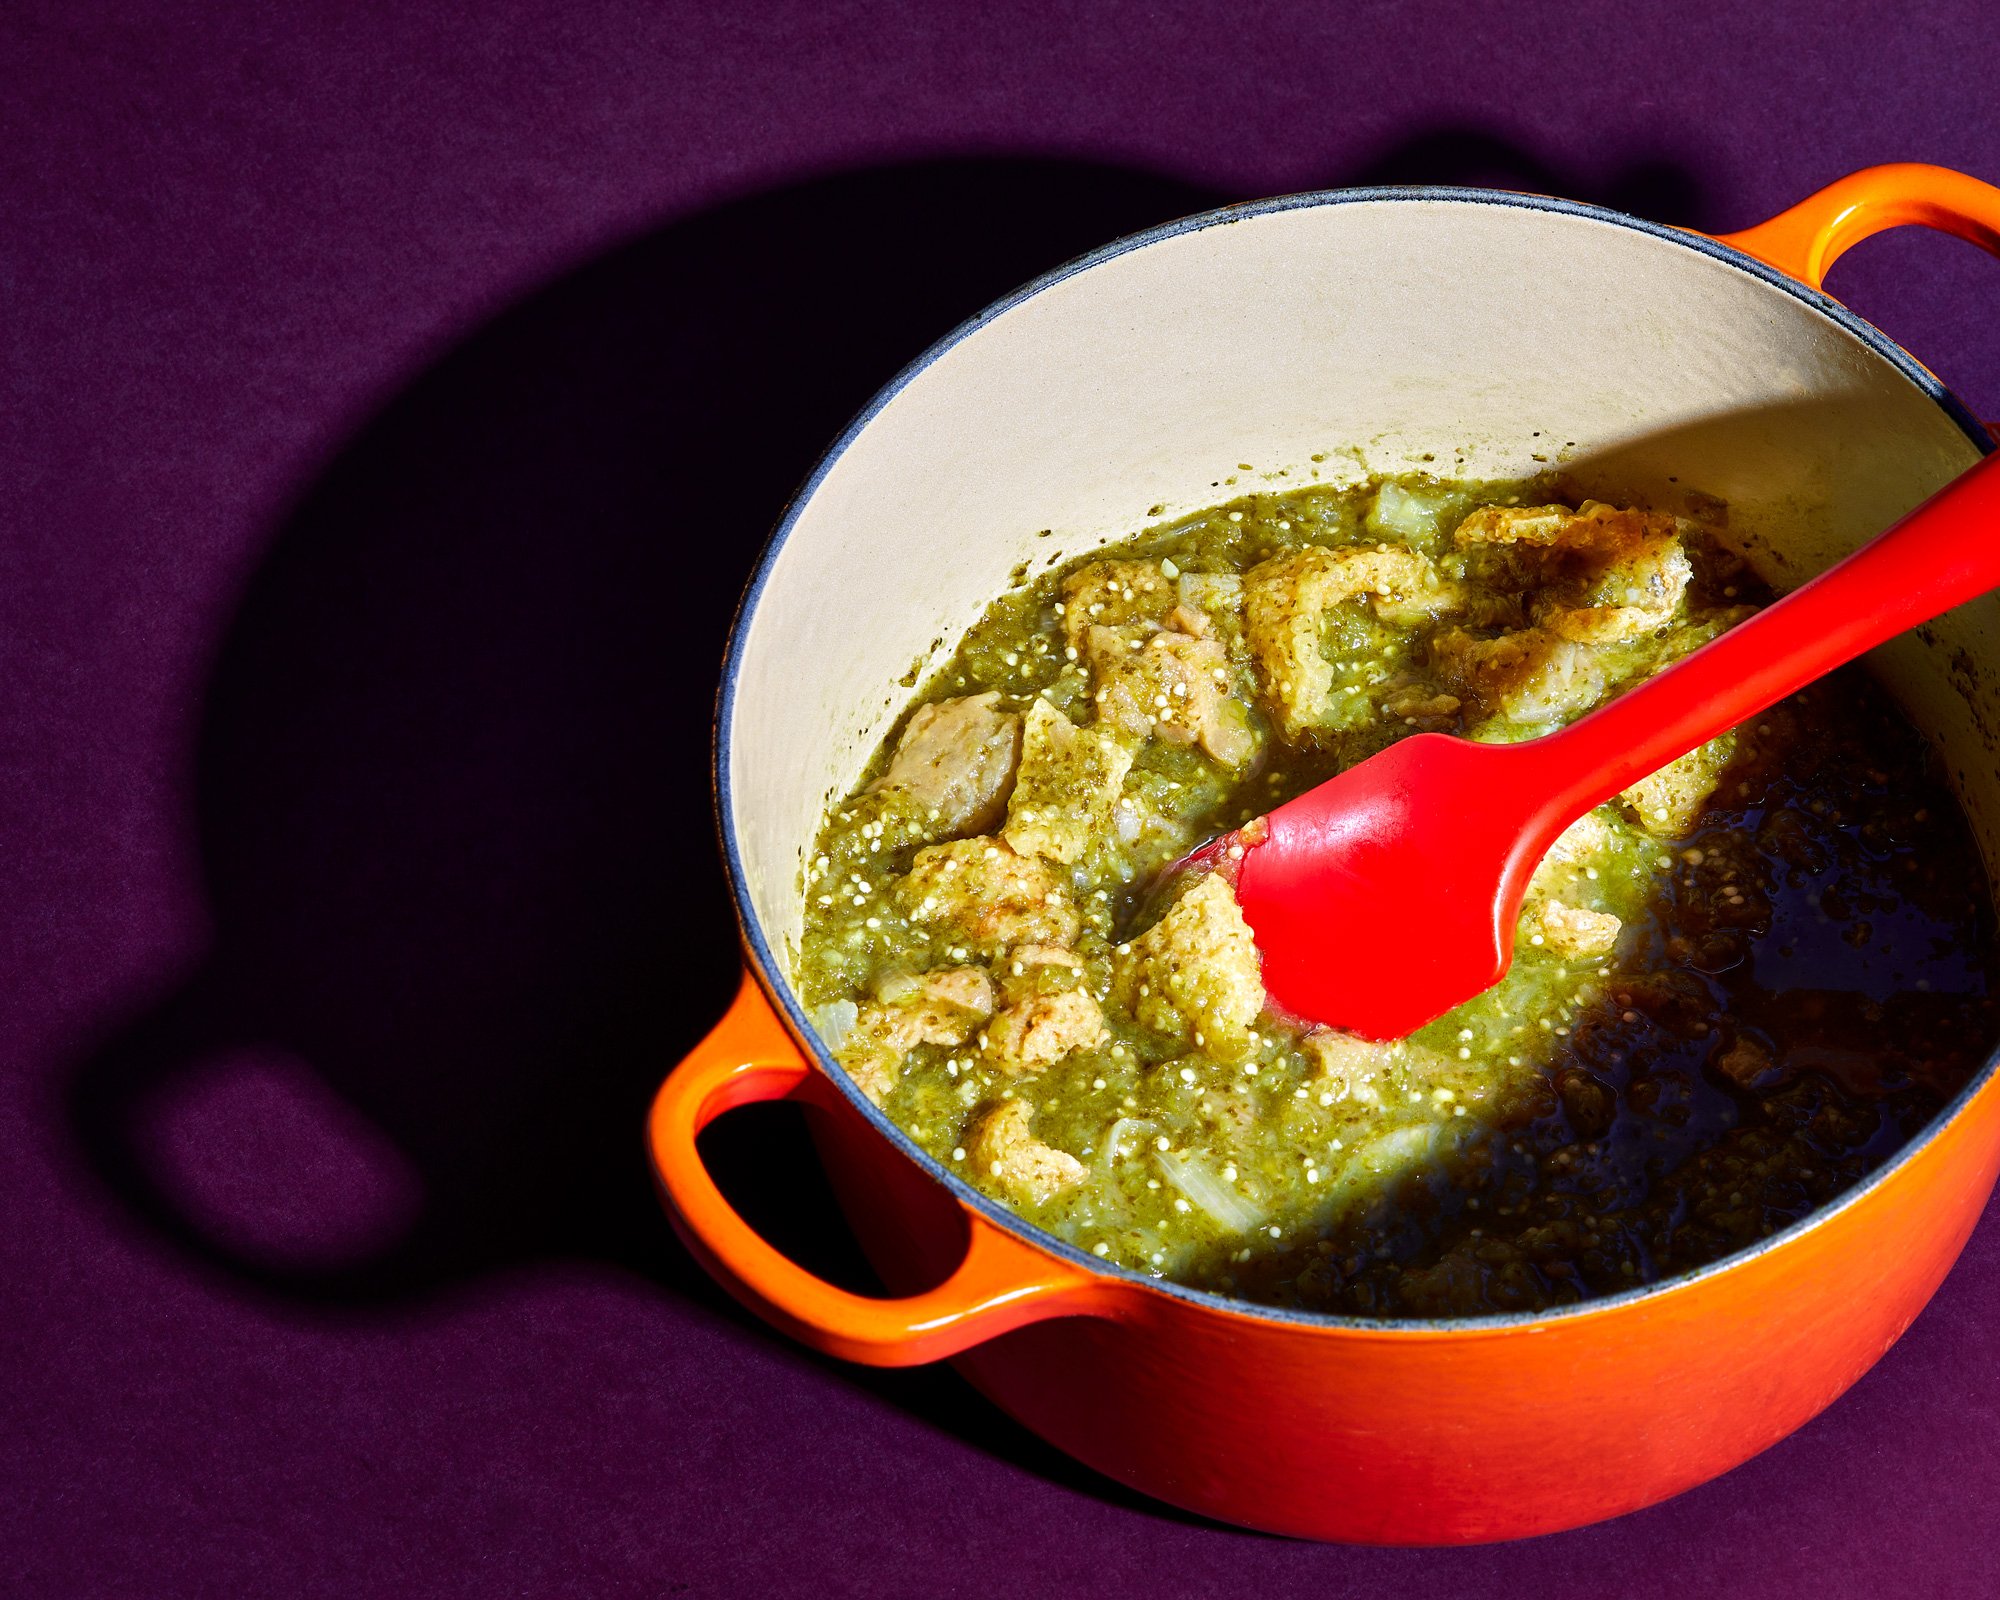 oakland-food-photographer-chicharron-en-salsa-verde-stew-in-orange-pot.jpg